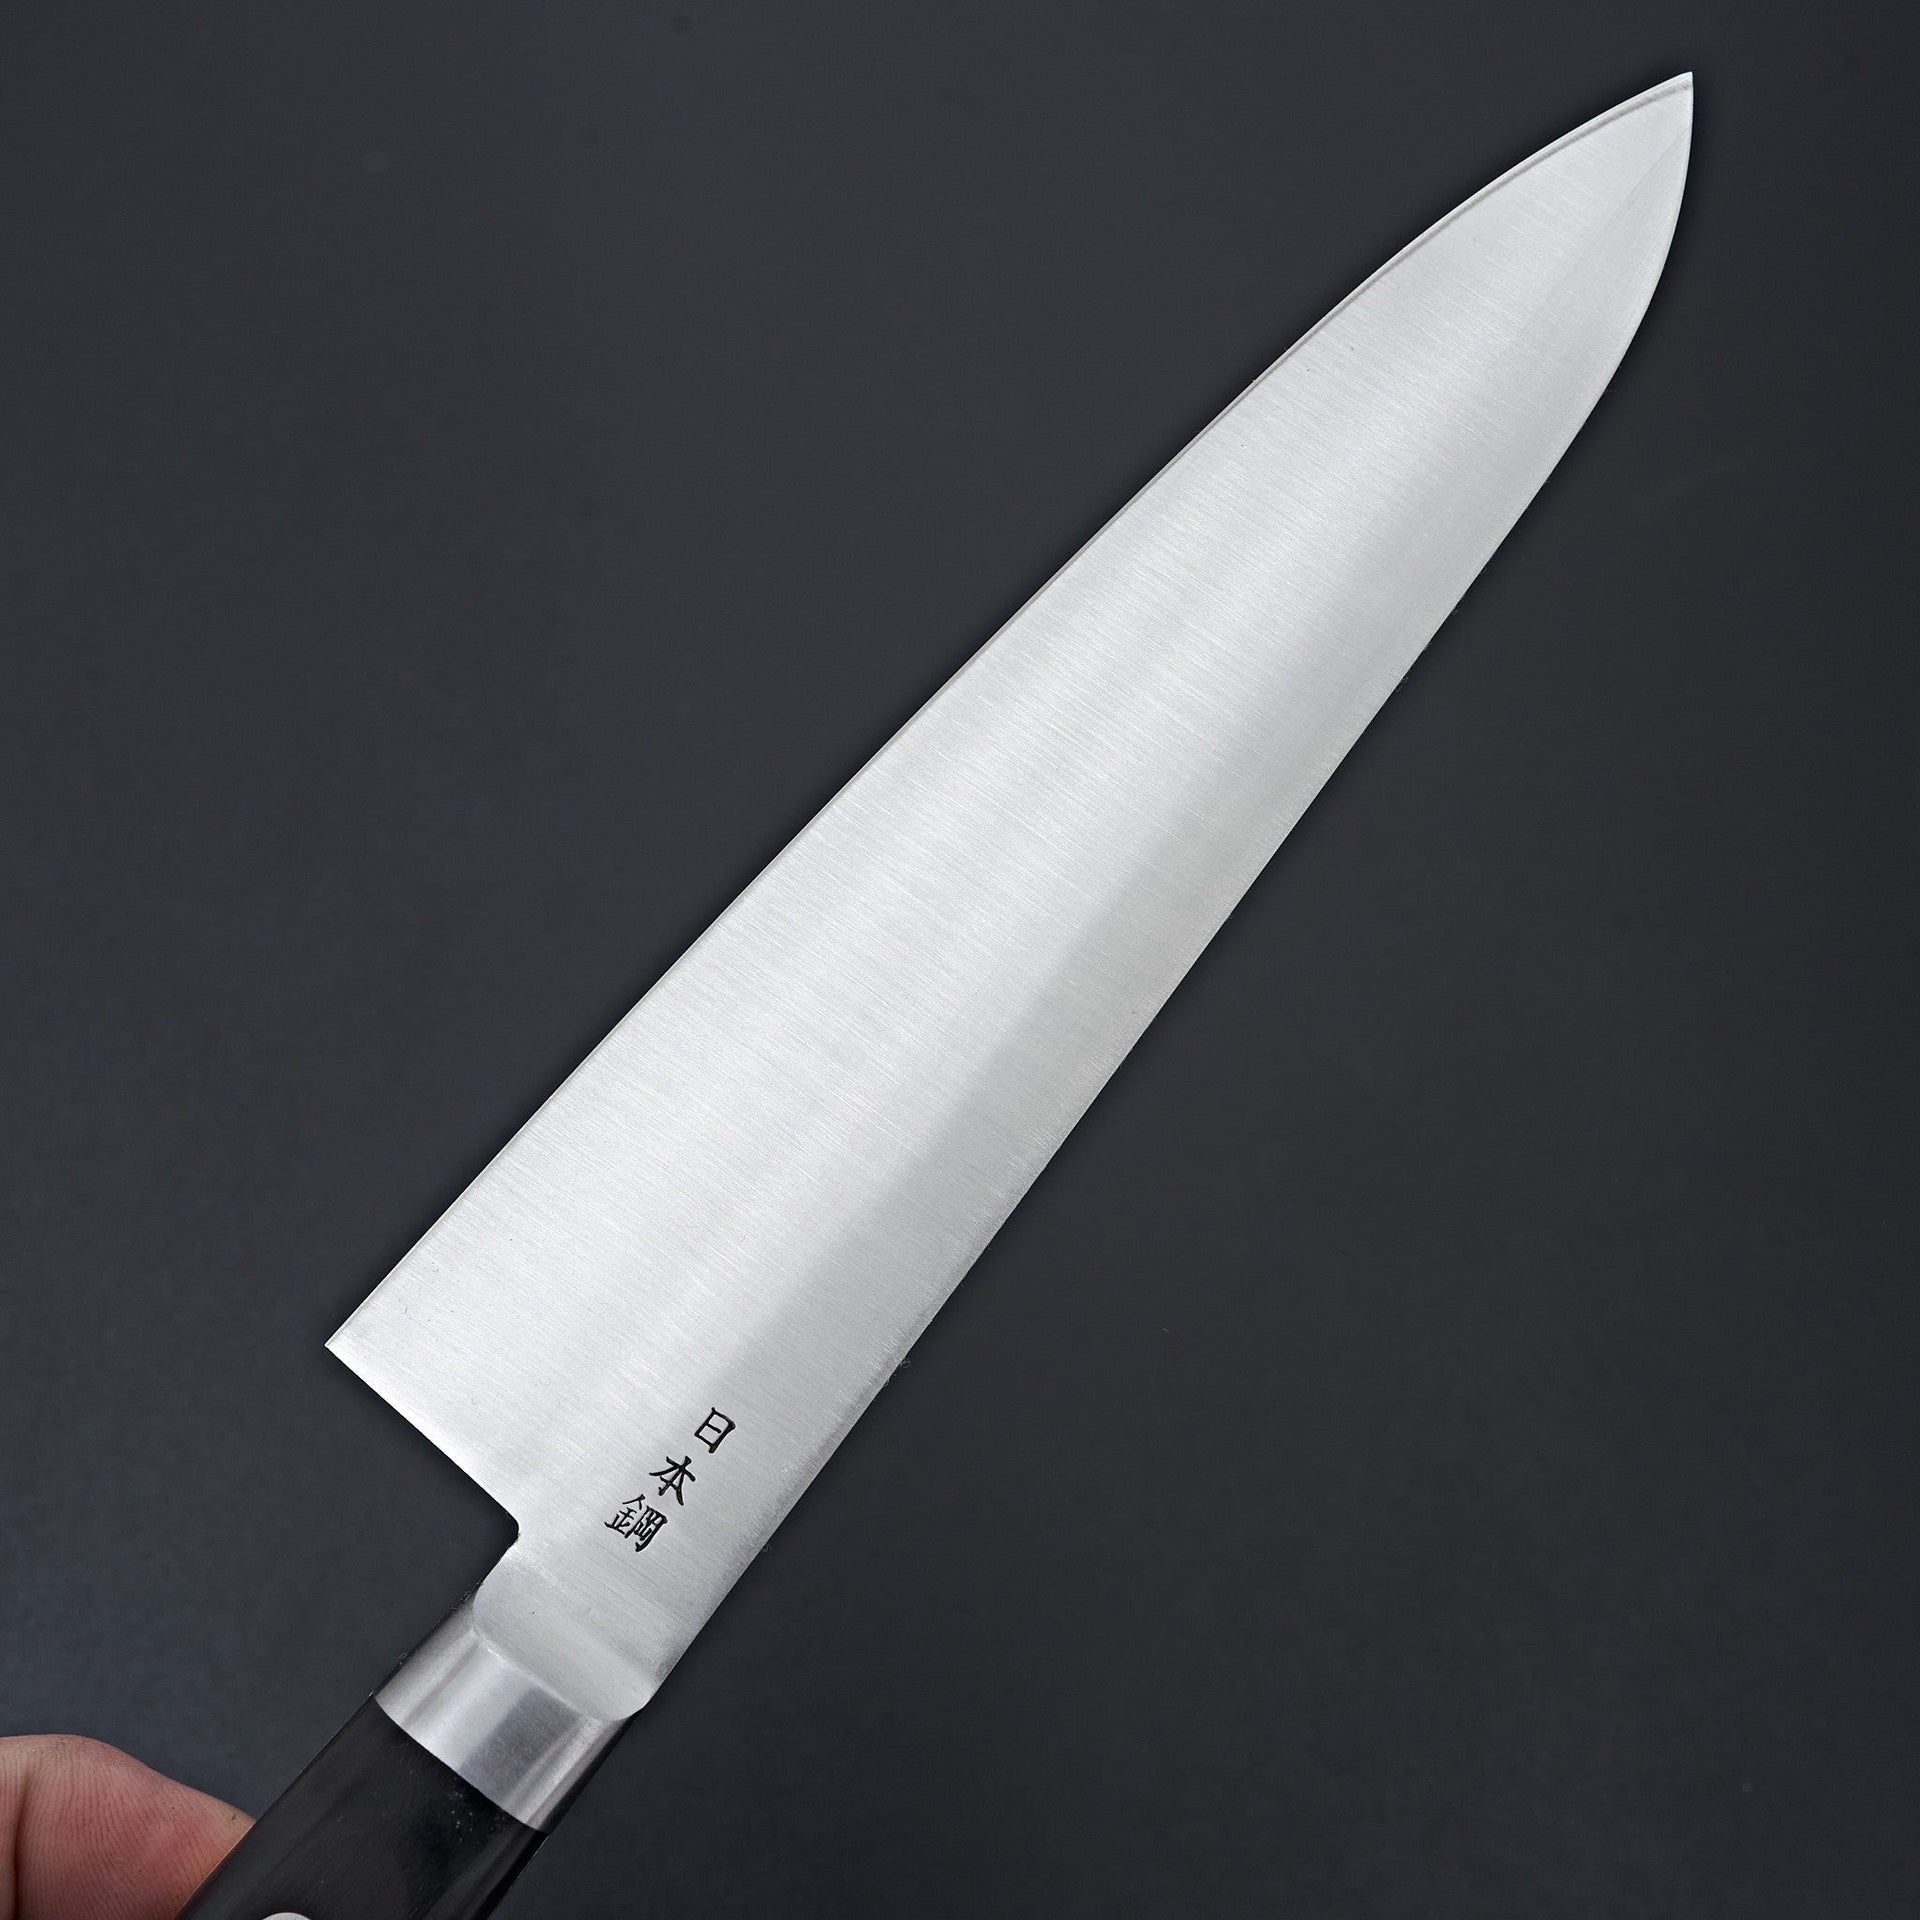 Sakai Kikumori Nihonko Carbon Gyuto 210mm-Knife-Sakai Kikumori-Carbon Knife Co